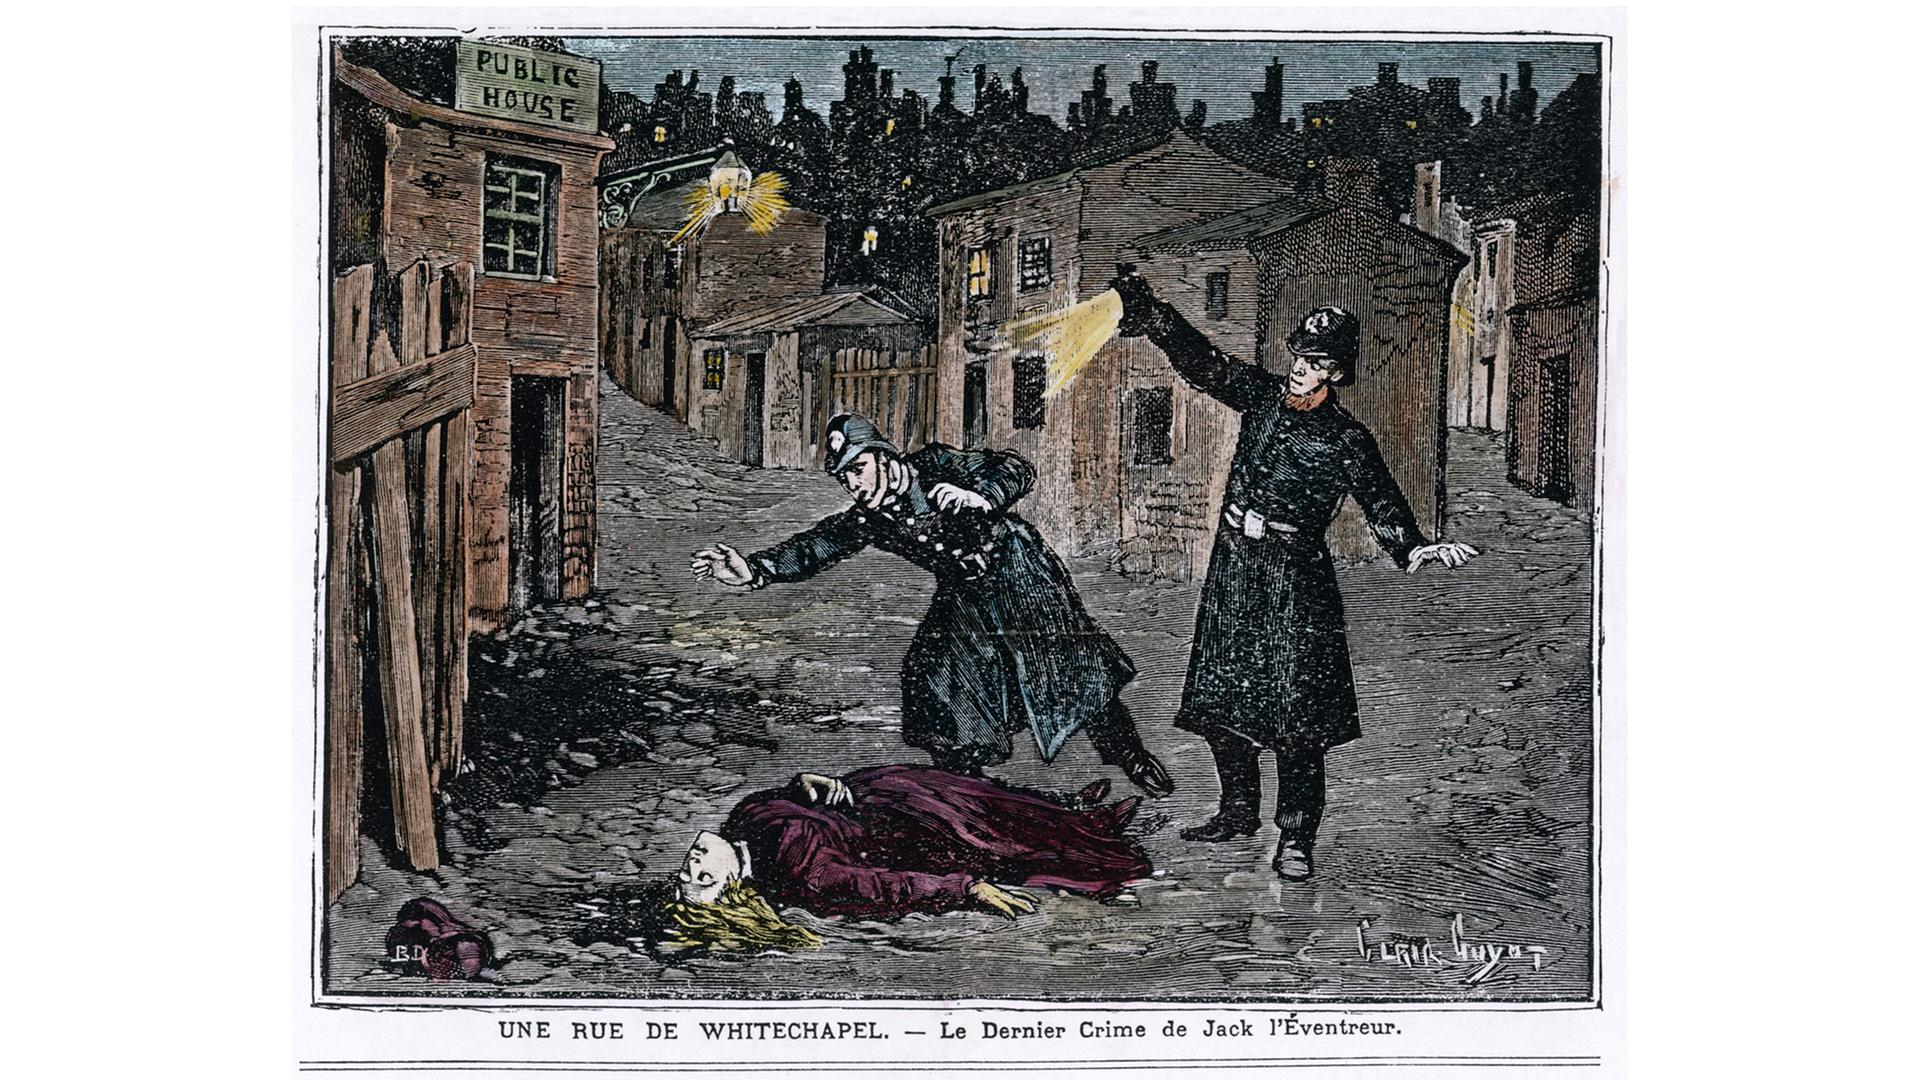 Die Entdeckung eines der Opfer der Whitechapel-Morde im Jahr 1888.